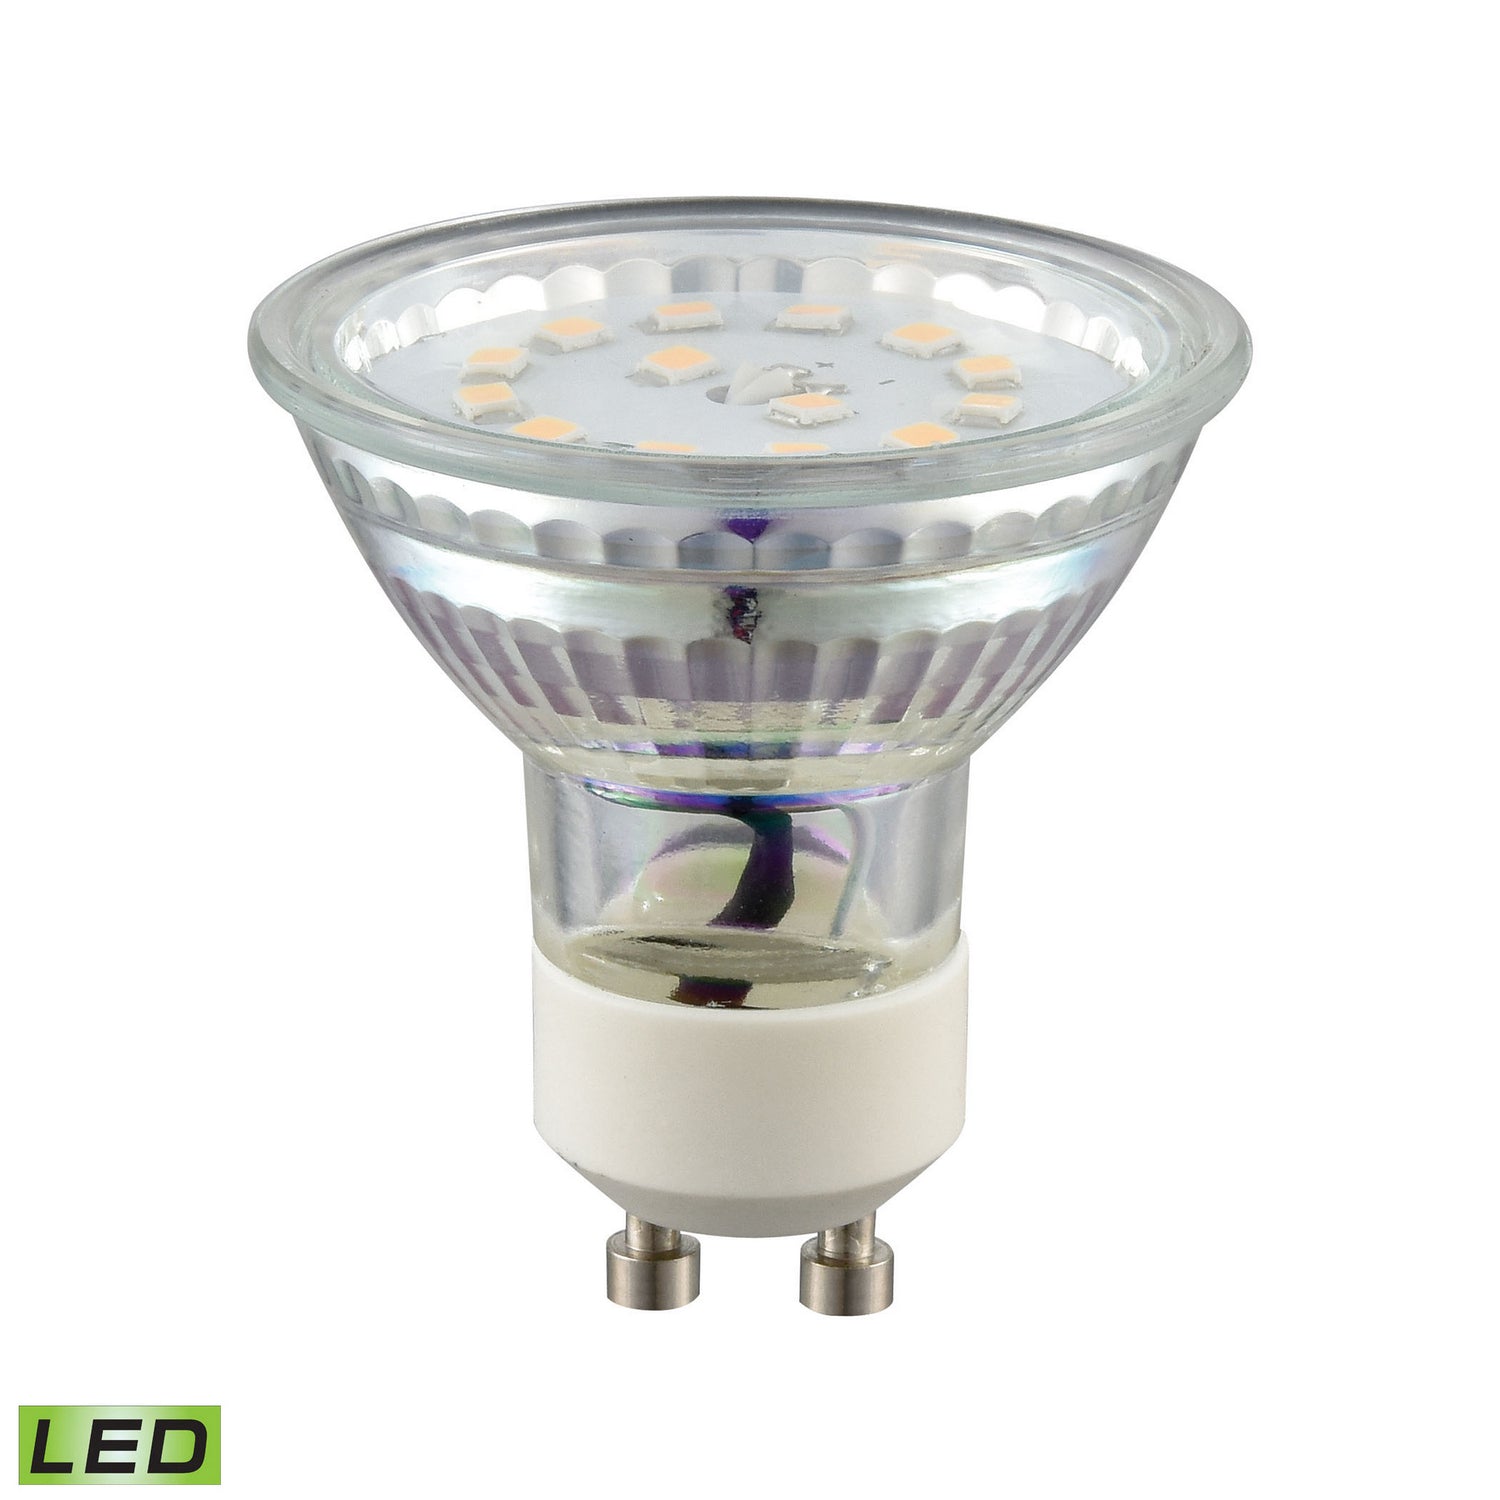 ELK Home - 1119 - Light Bulb - LED Bulbs - Clear, Silver, Silver